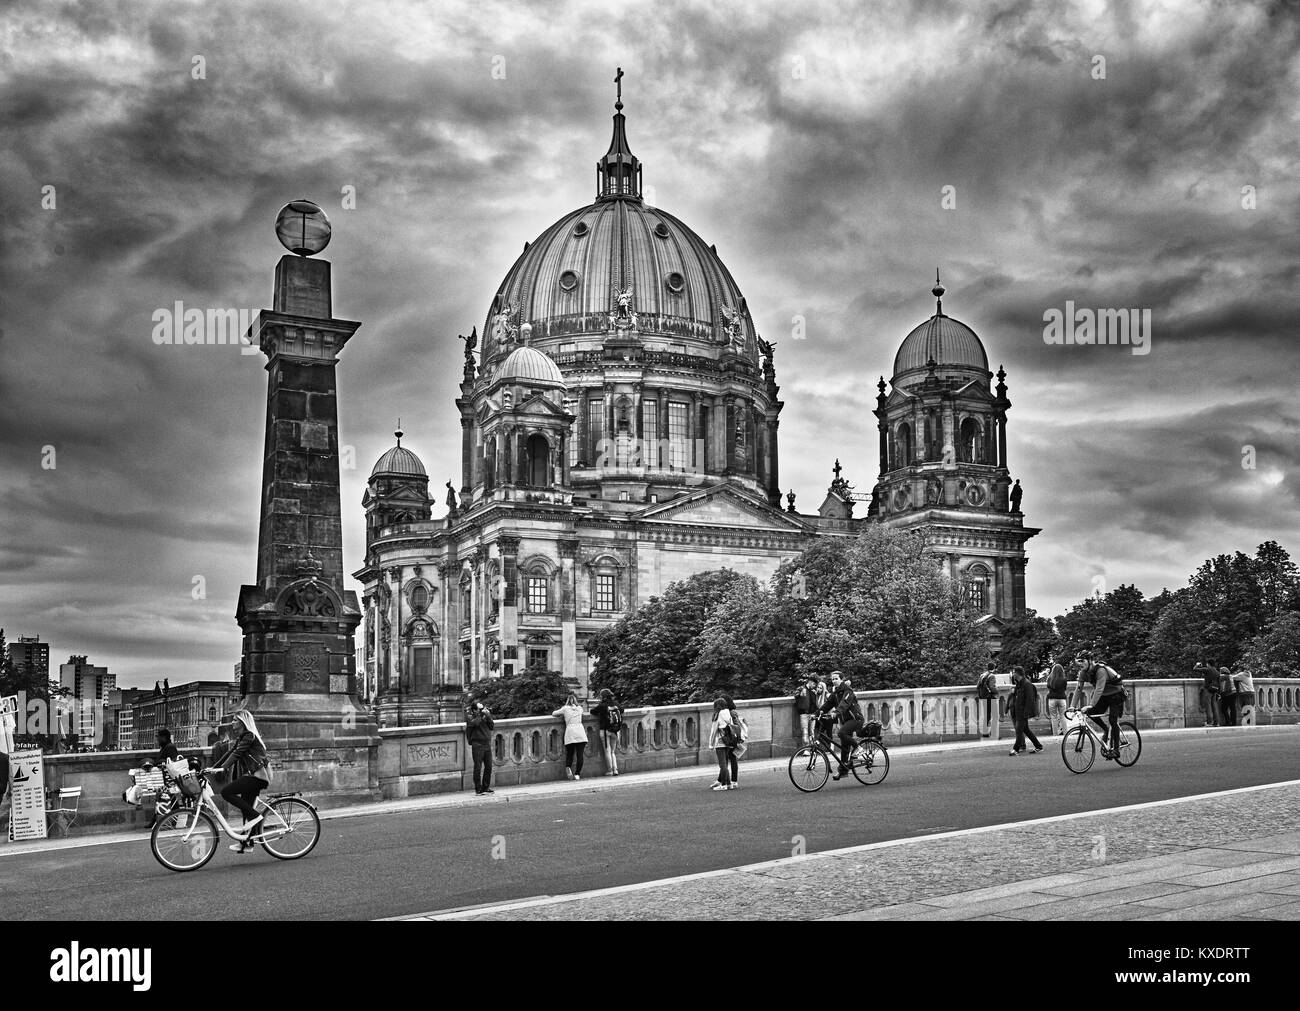 Berlino, Germania, Settembre 7 / 2017 cattedrale di Berlino, Berliner Dom, suggestiva atmosfera invernale - fotografia in bianco e nero Foto Stock